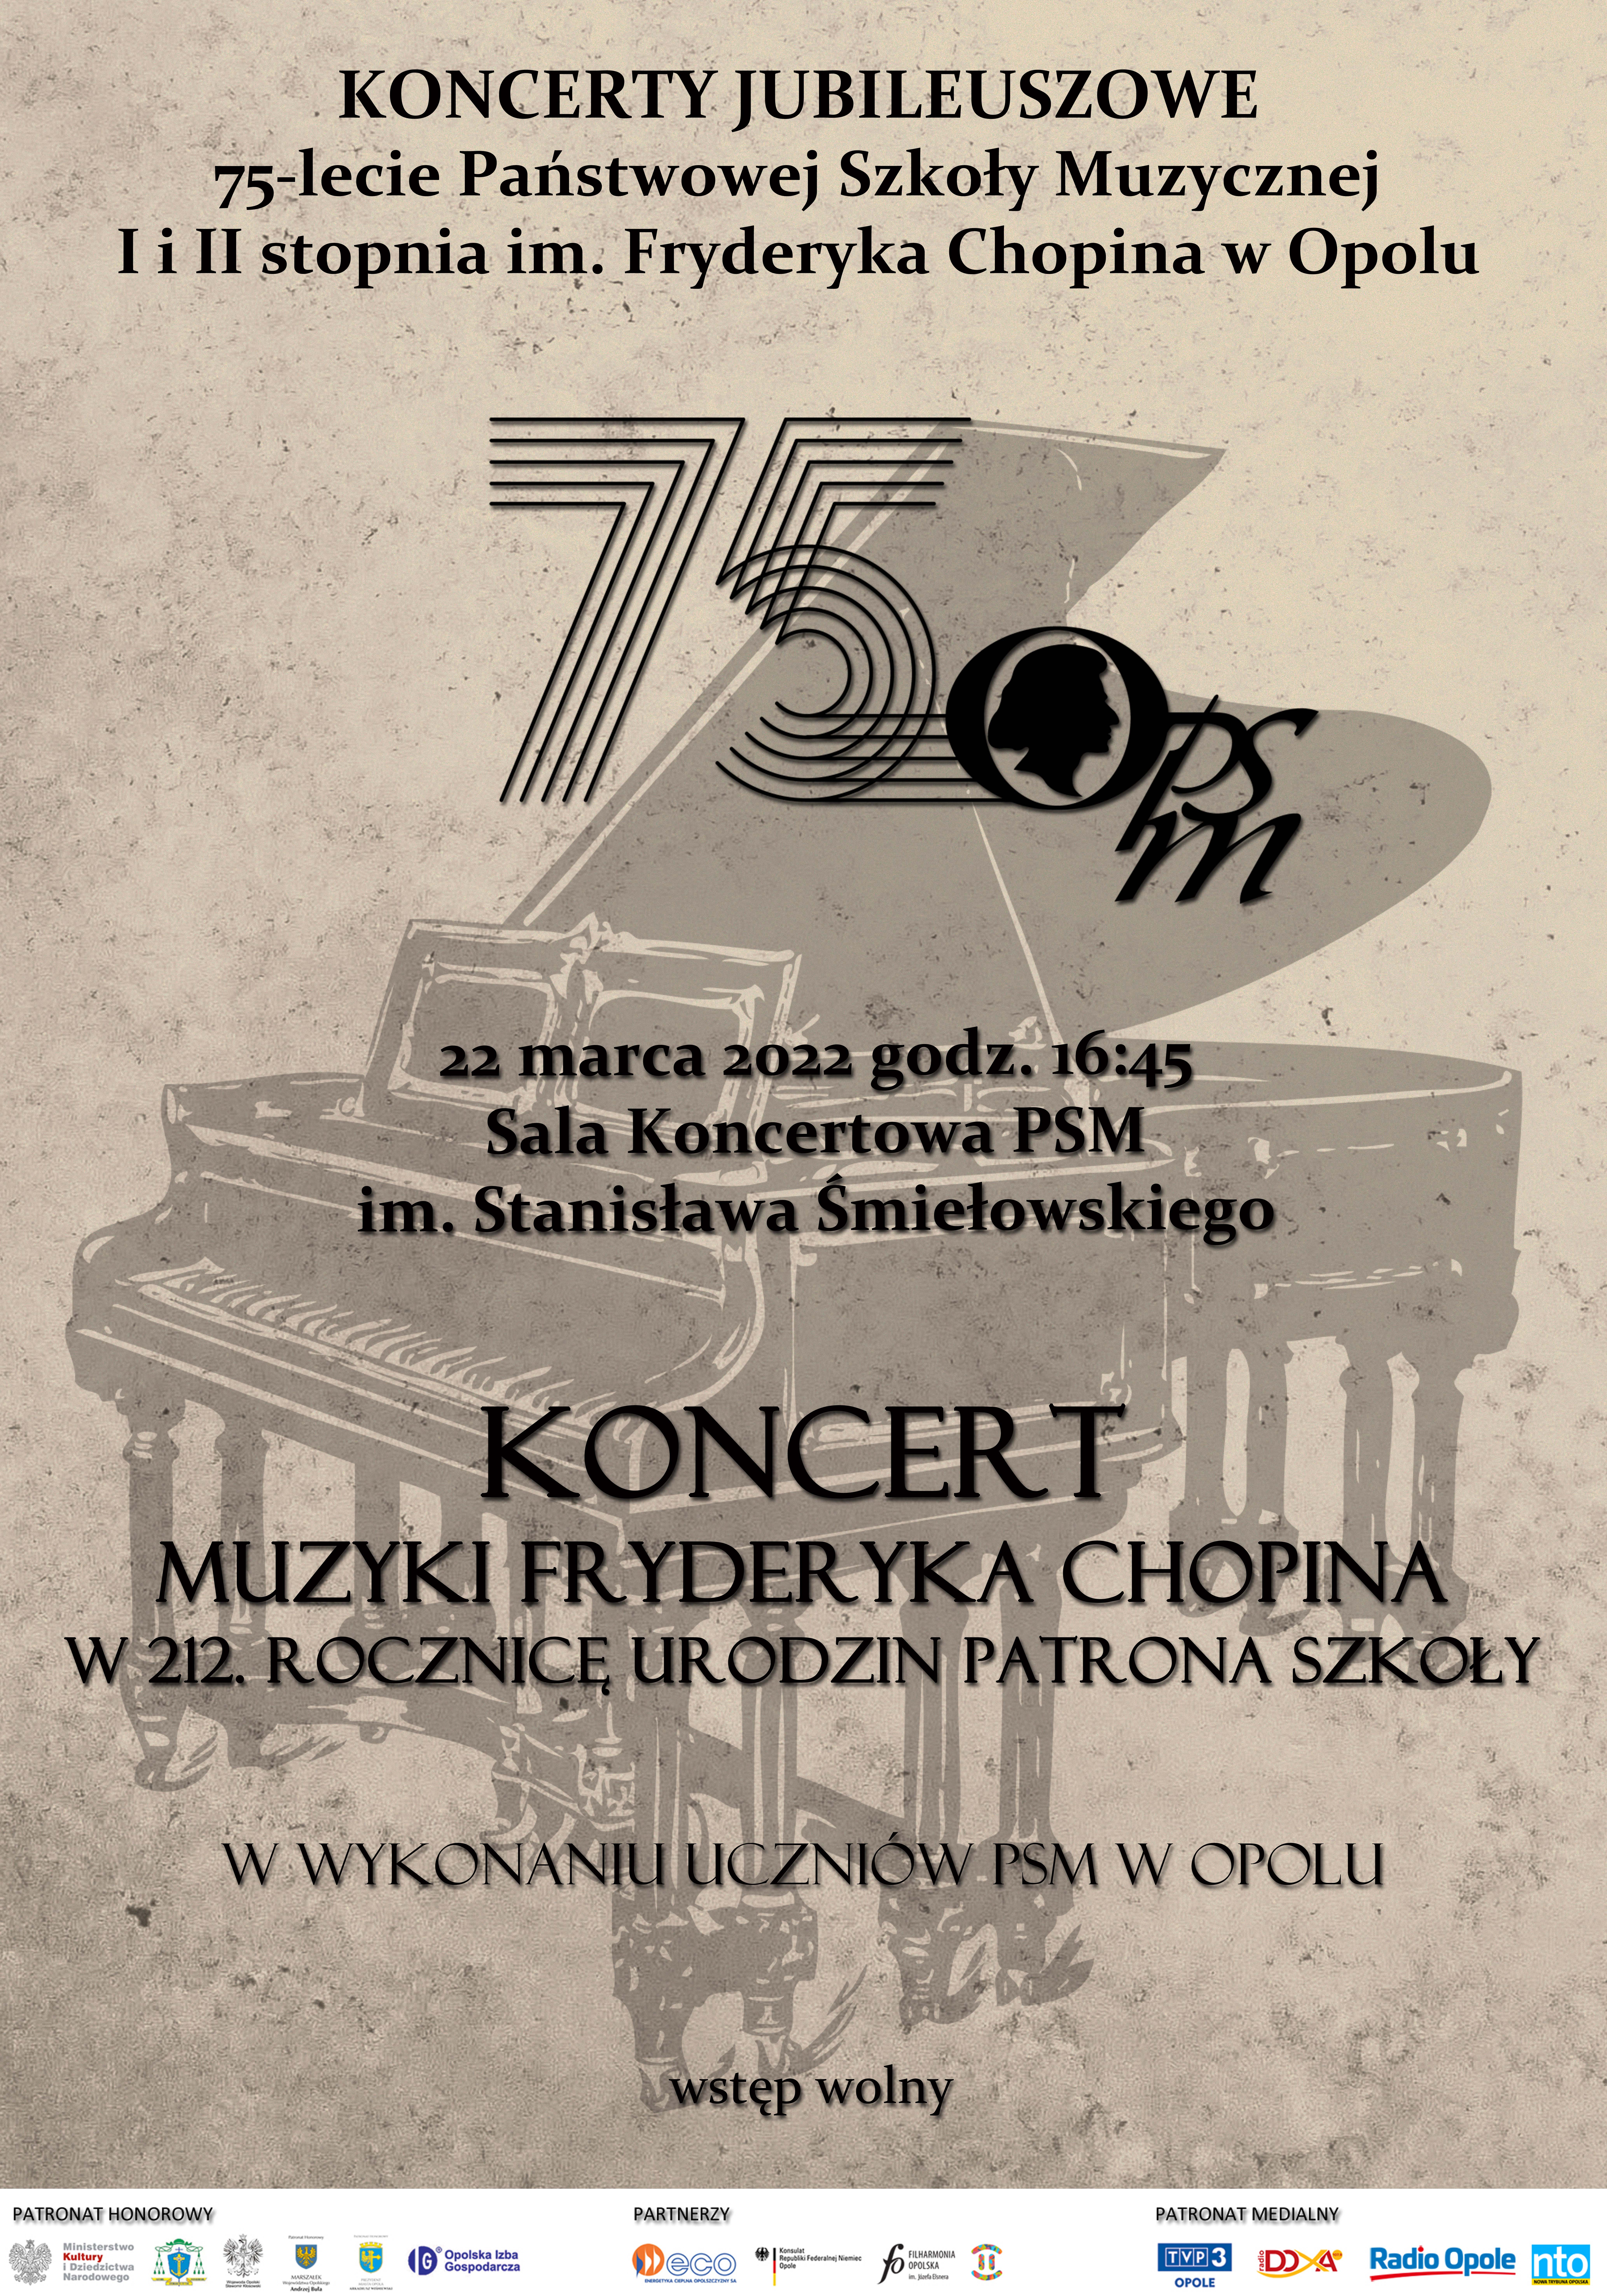 Audycja Muzyki Fryderyka Chopina